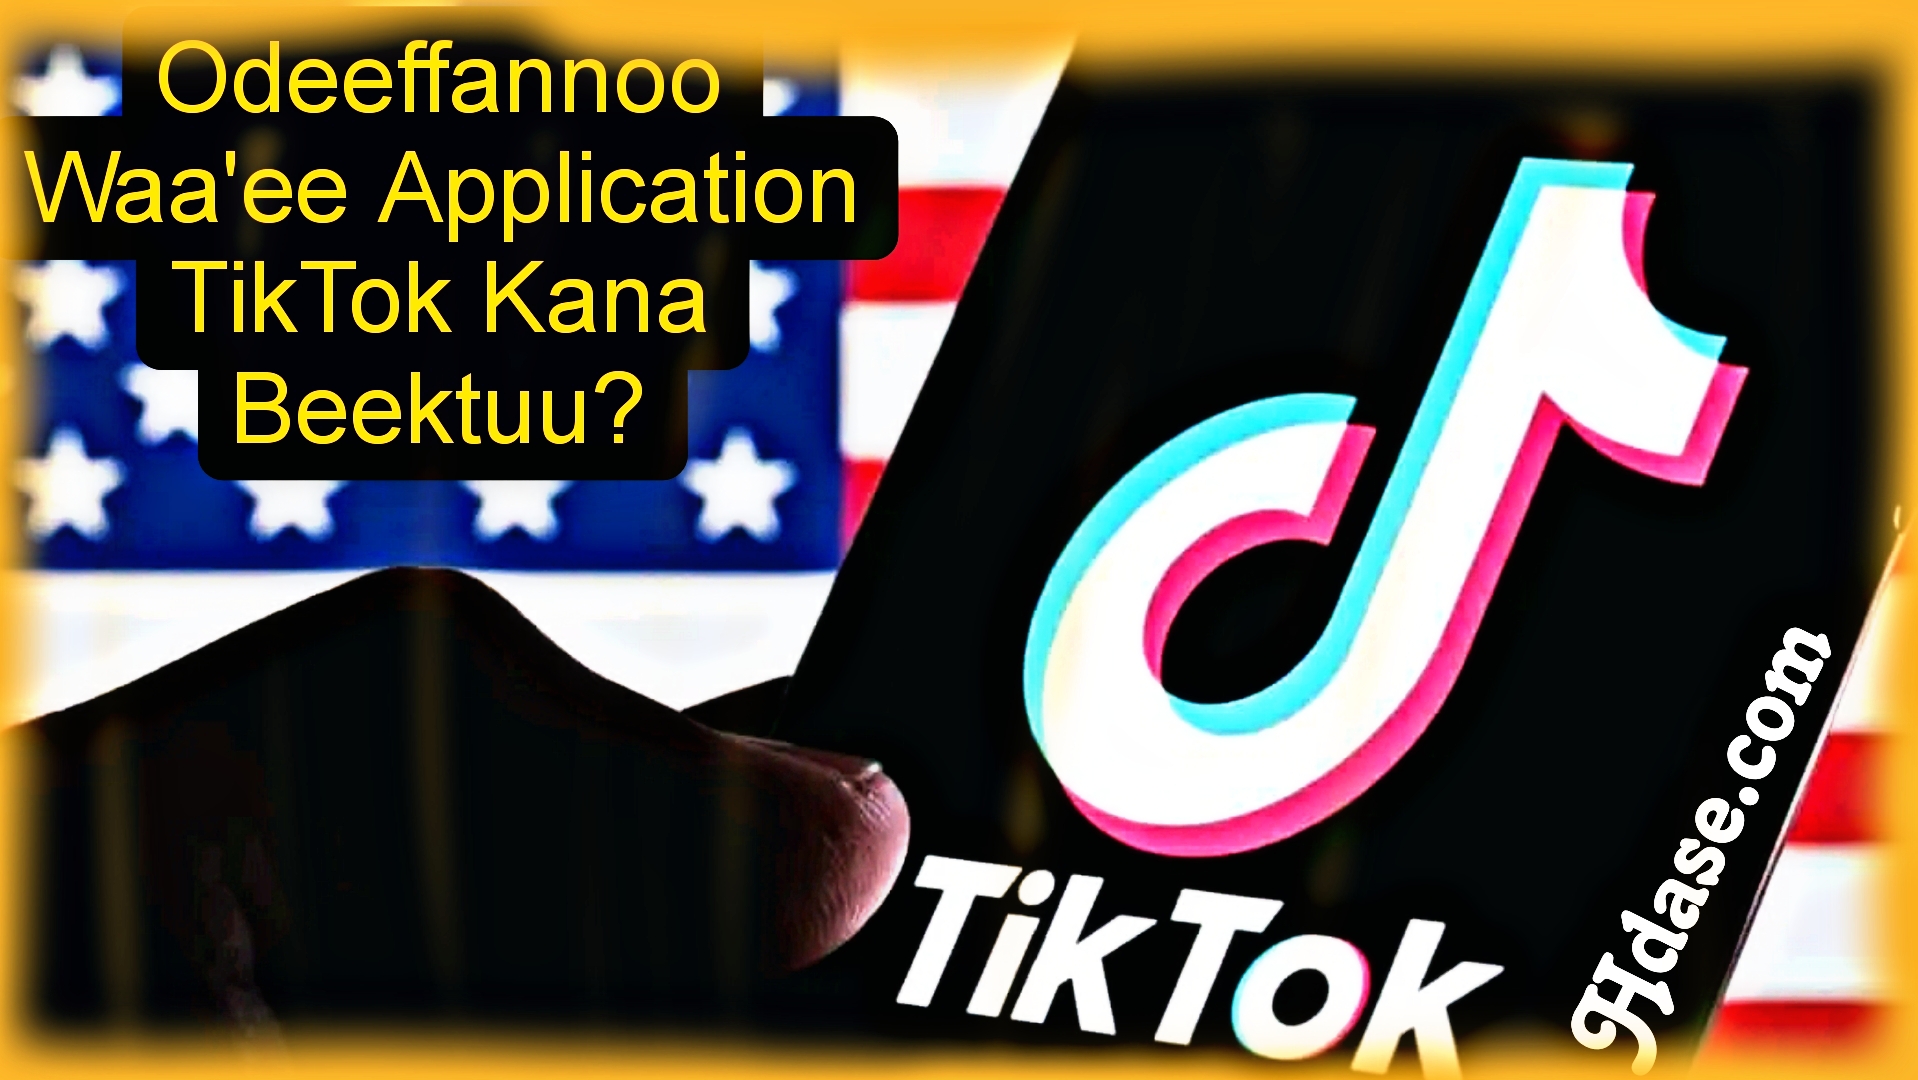 Odeeffannoo Waa’ee Application Tiktok kana beektuu?